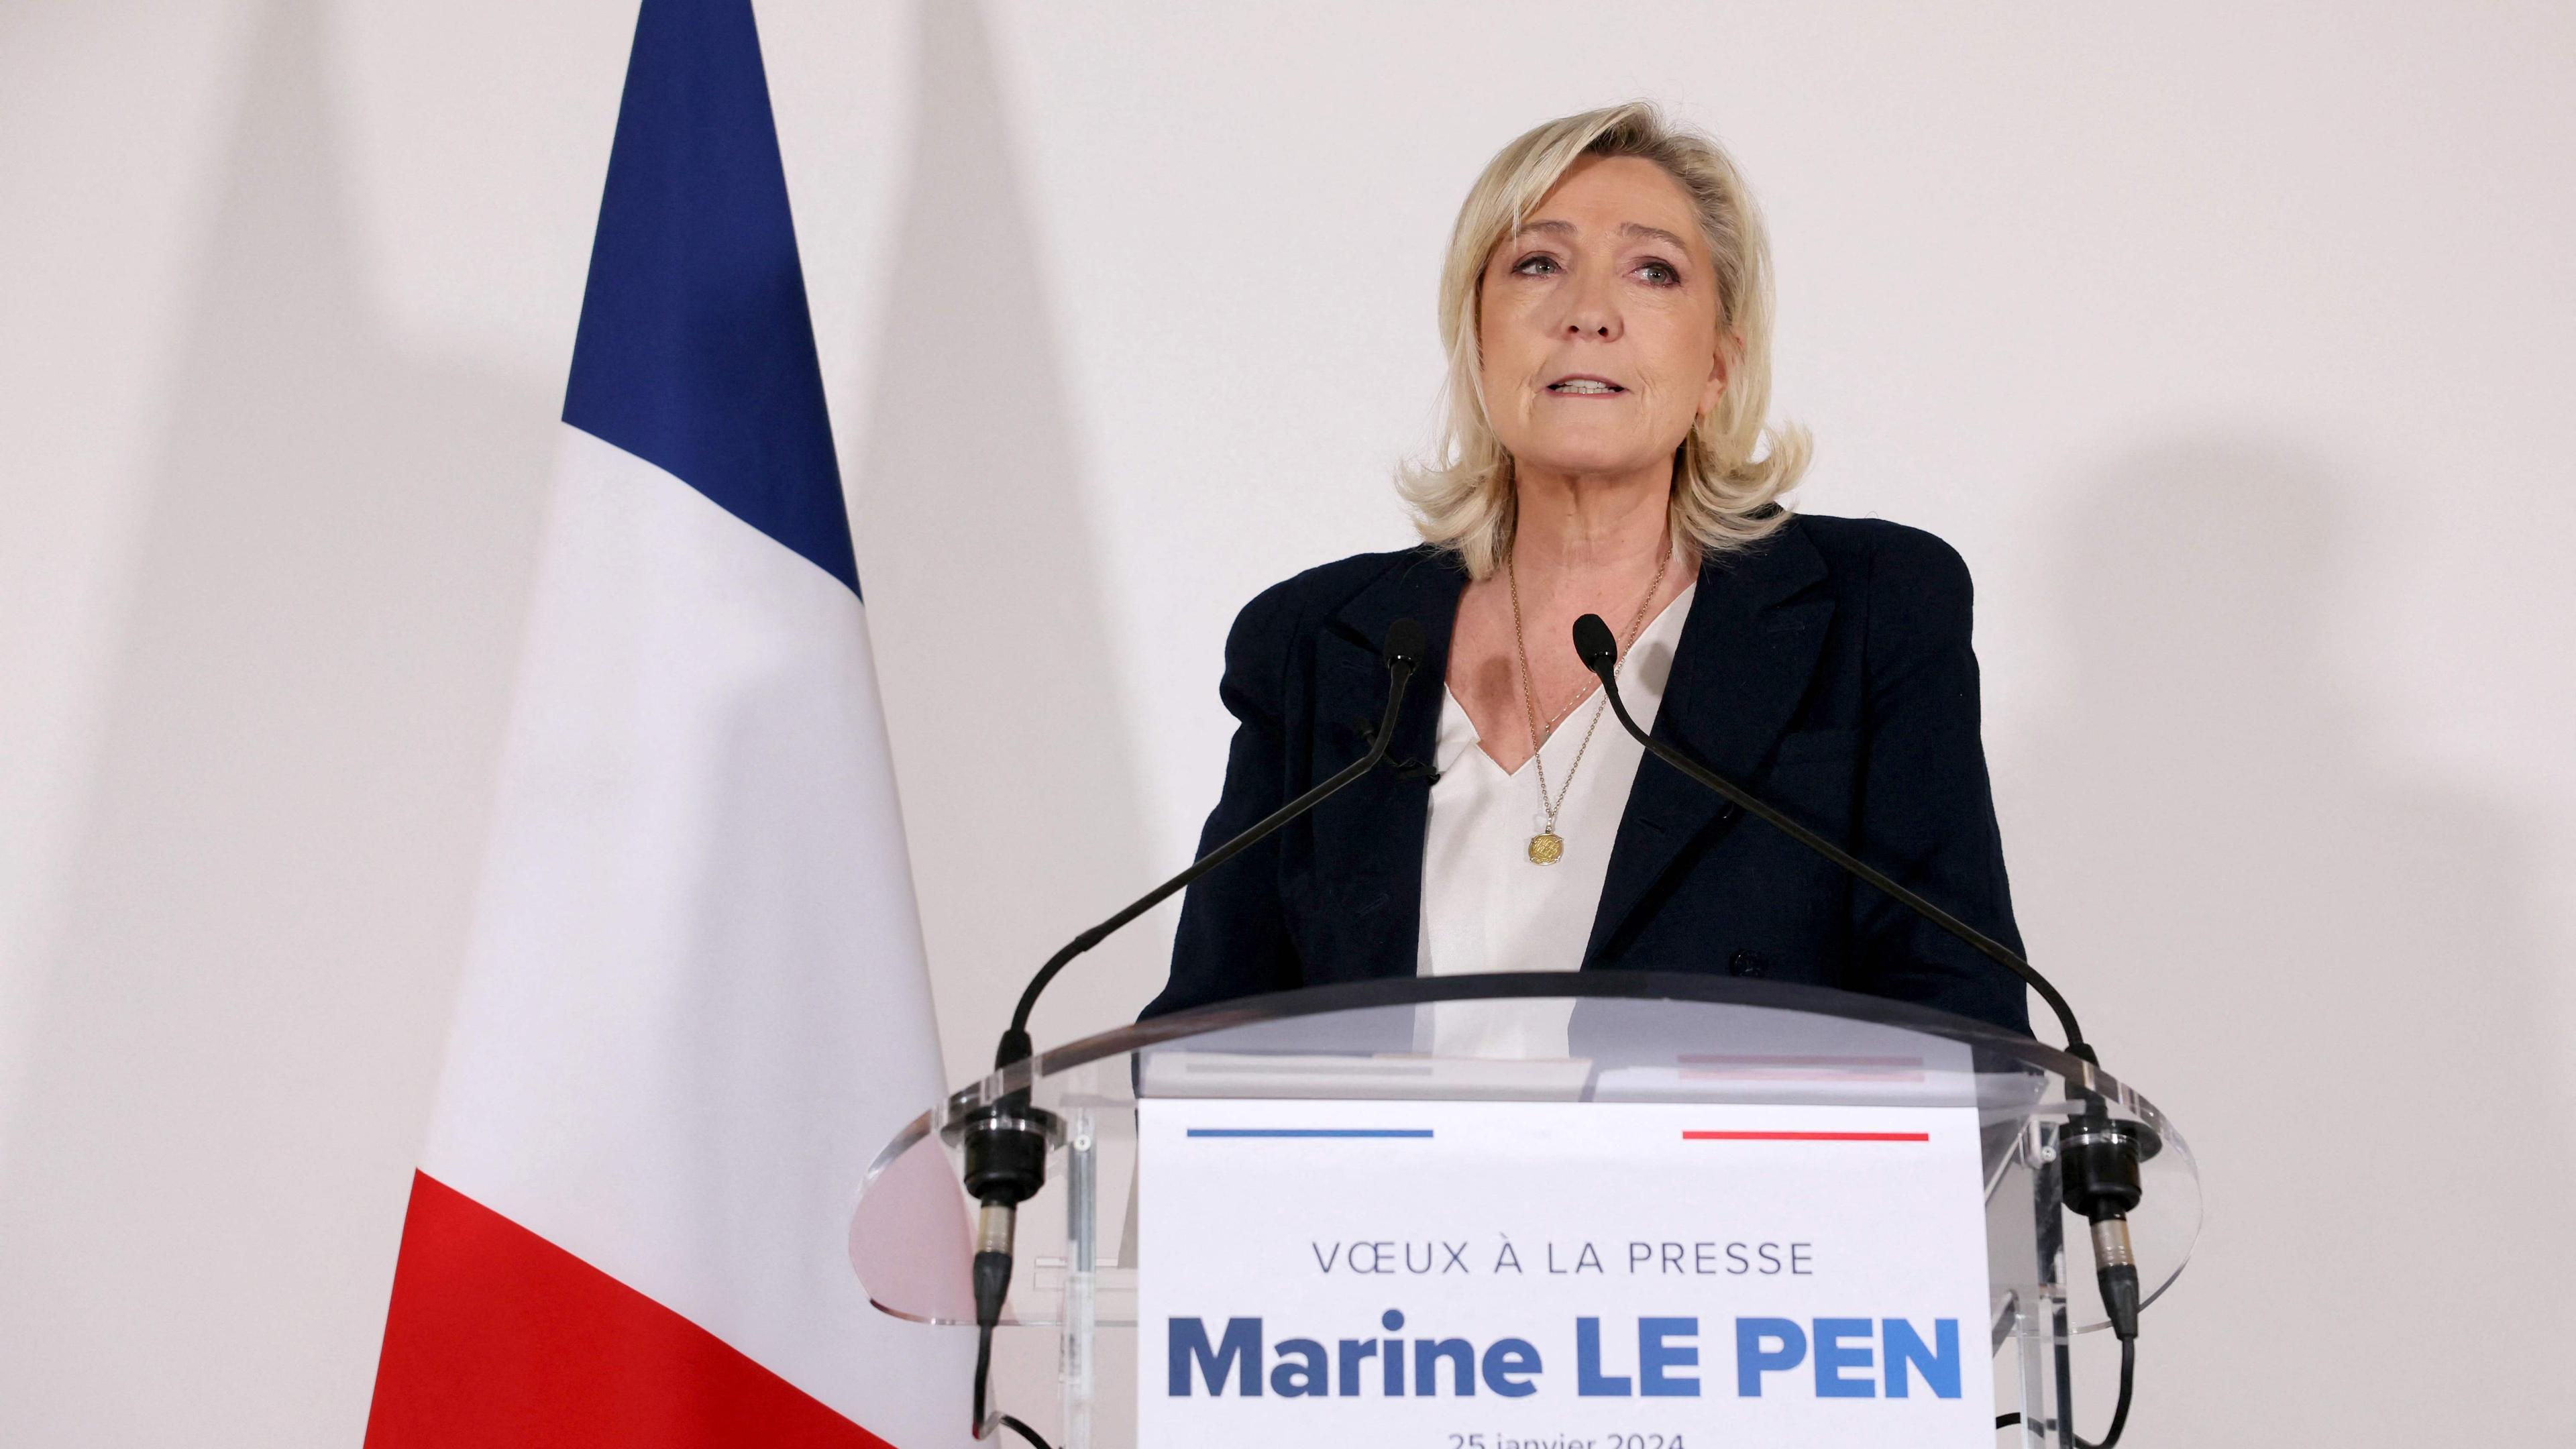 Fraktionschefin Marine Le Pen spricht beim Neujahresauftakt der Rassemblement National (RN)